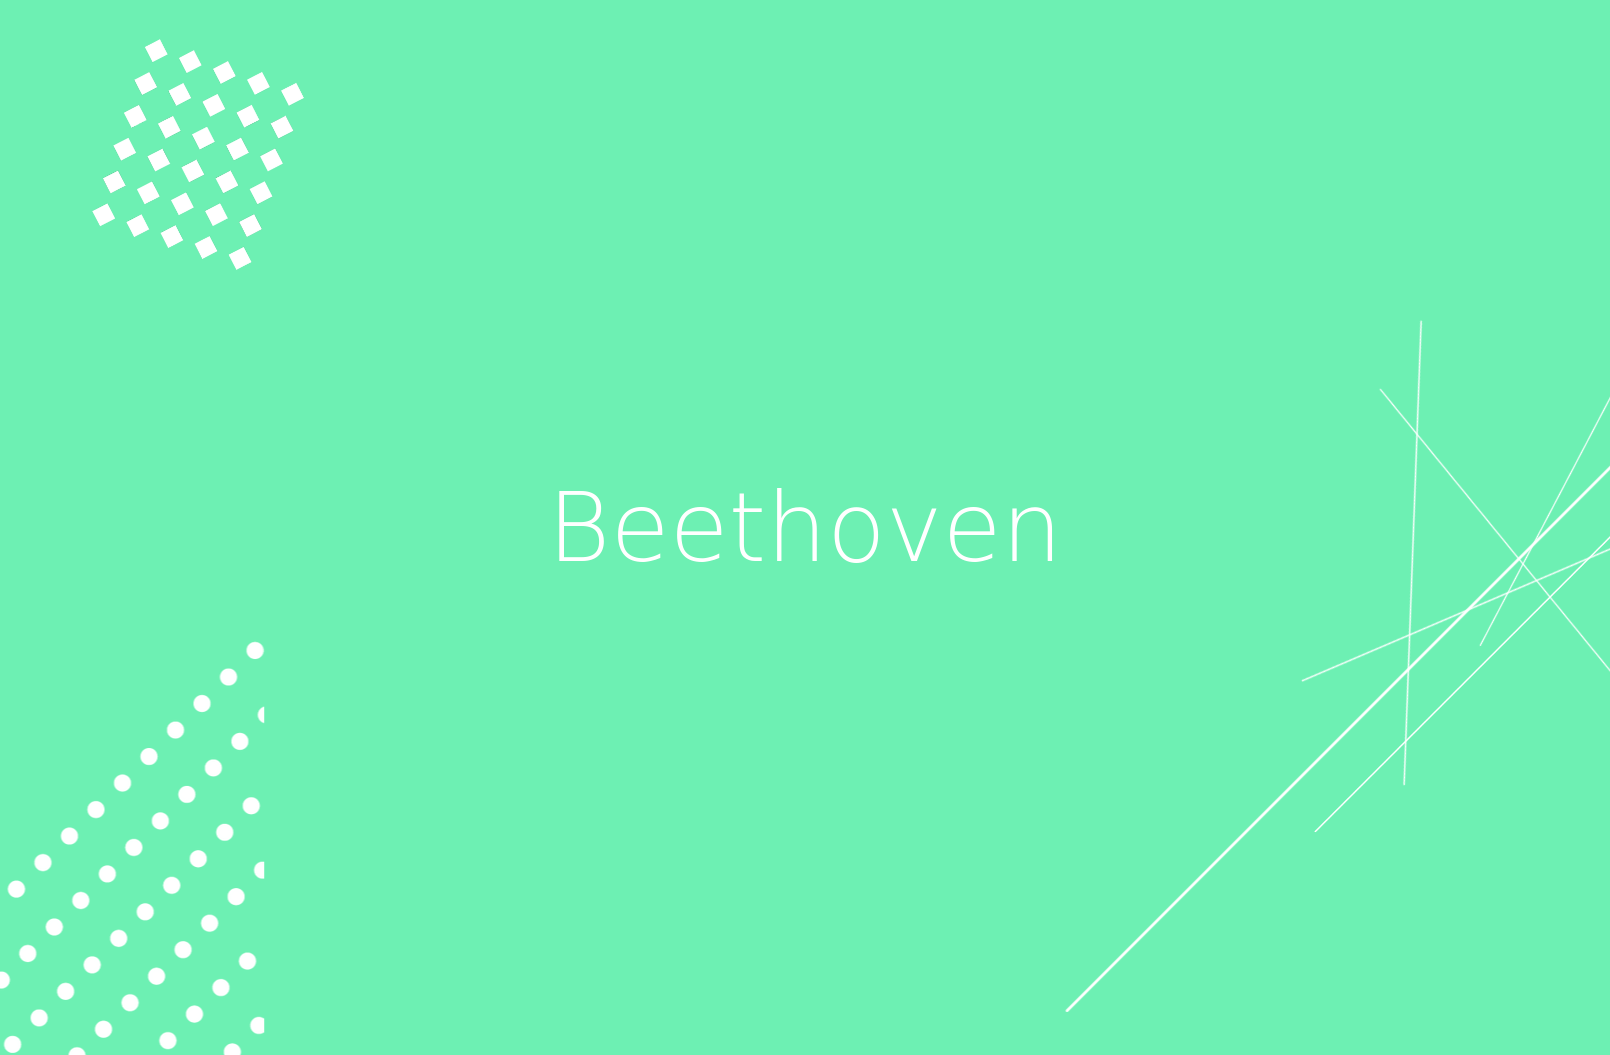 Beethoven: Su biografía